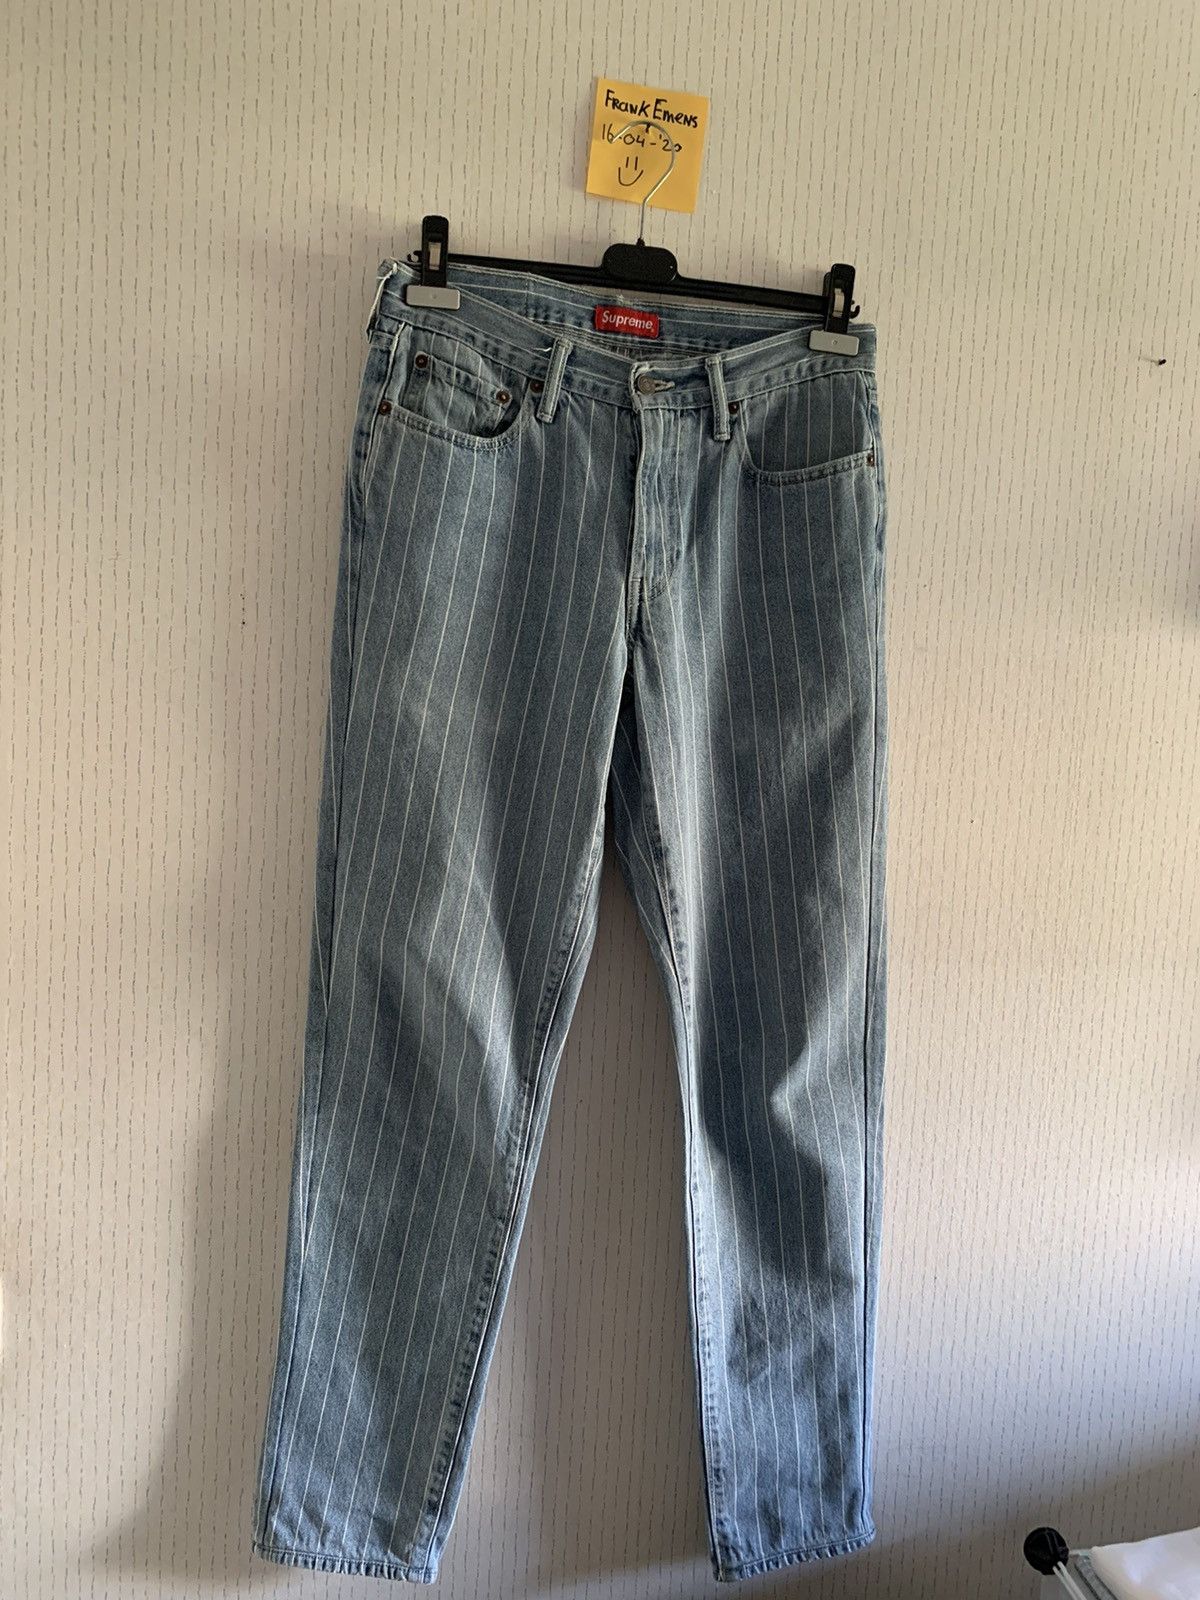 Supreme Supreme Levi's Pinstripe 550 Jeans Blue | Grailed